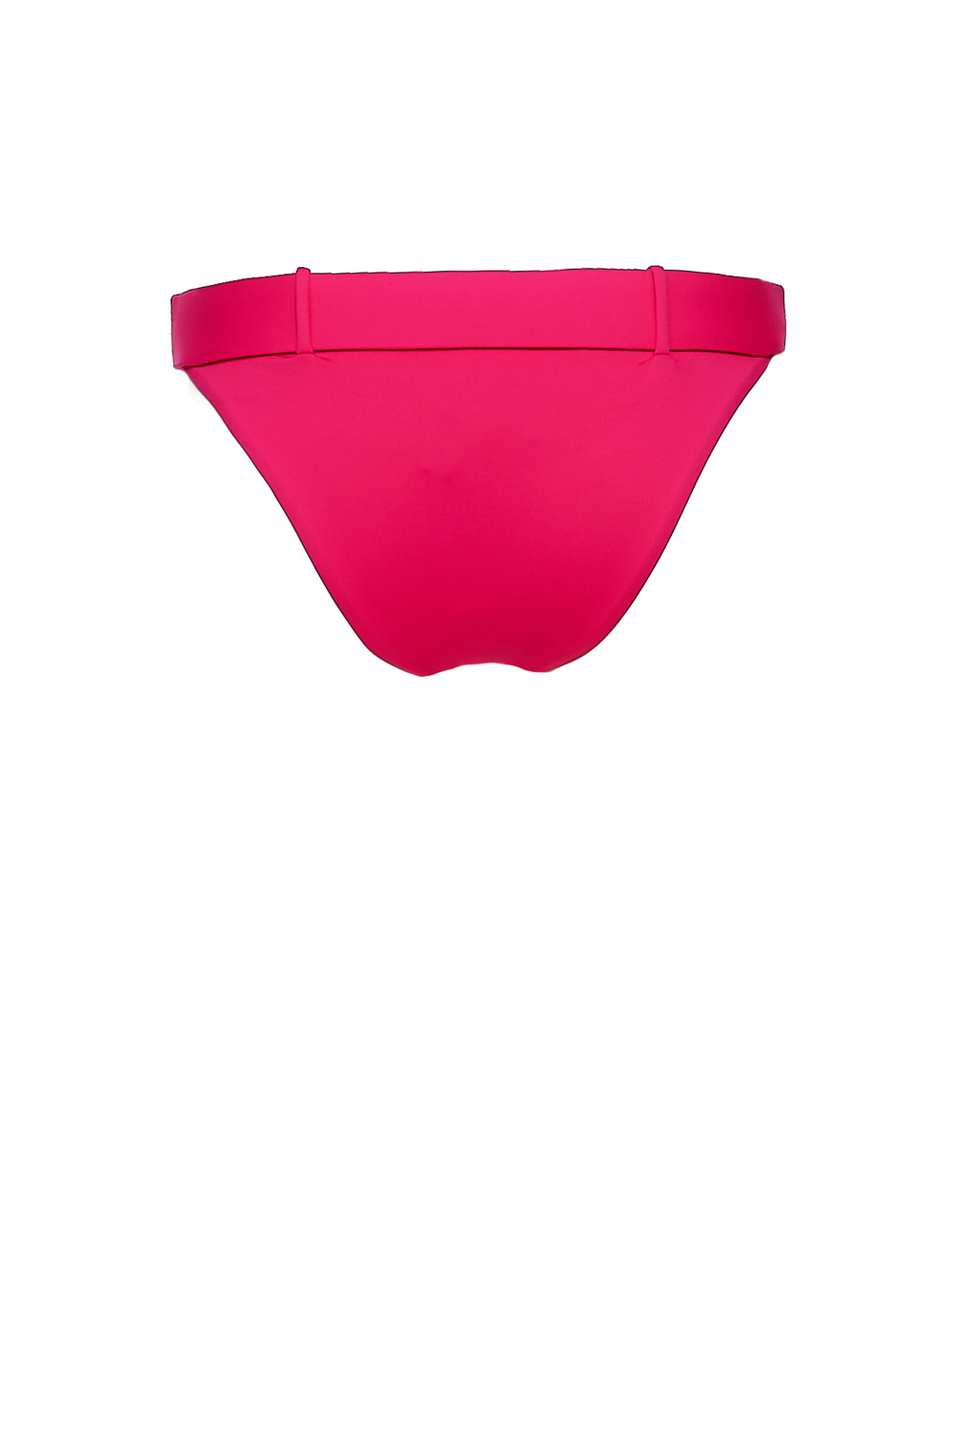 Moschino Плавки бикини с поясом (цвет ), артикул A7135-5508 | Фото 2